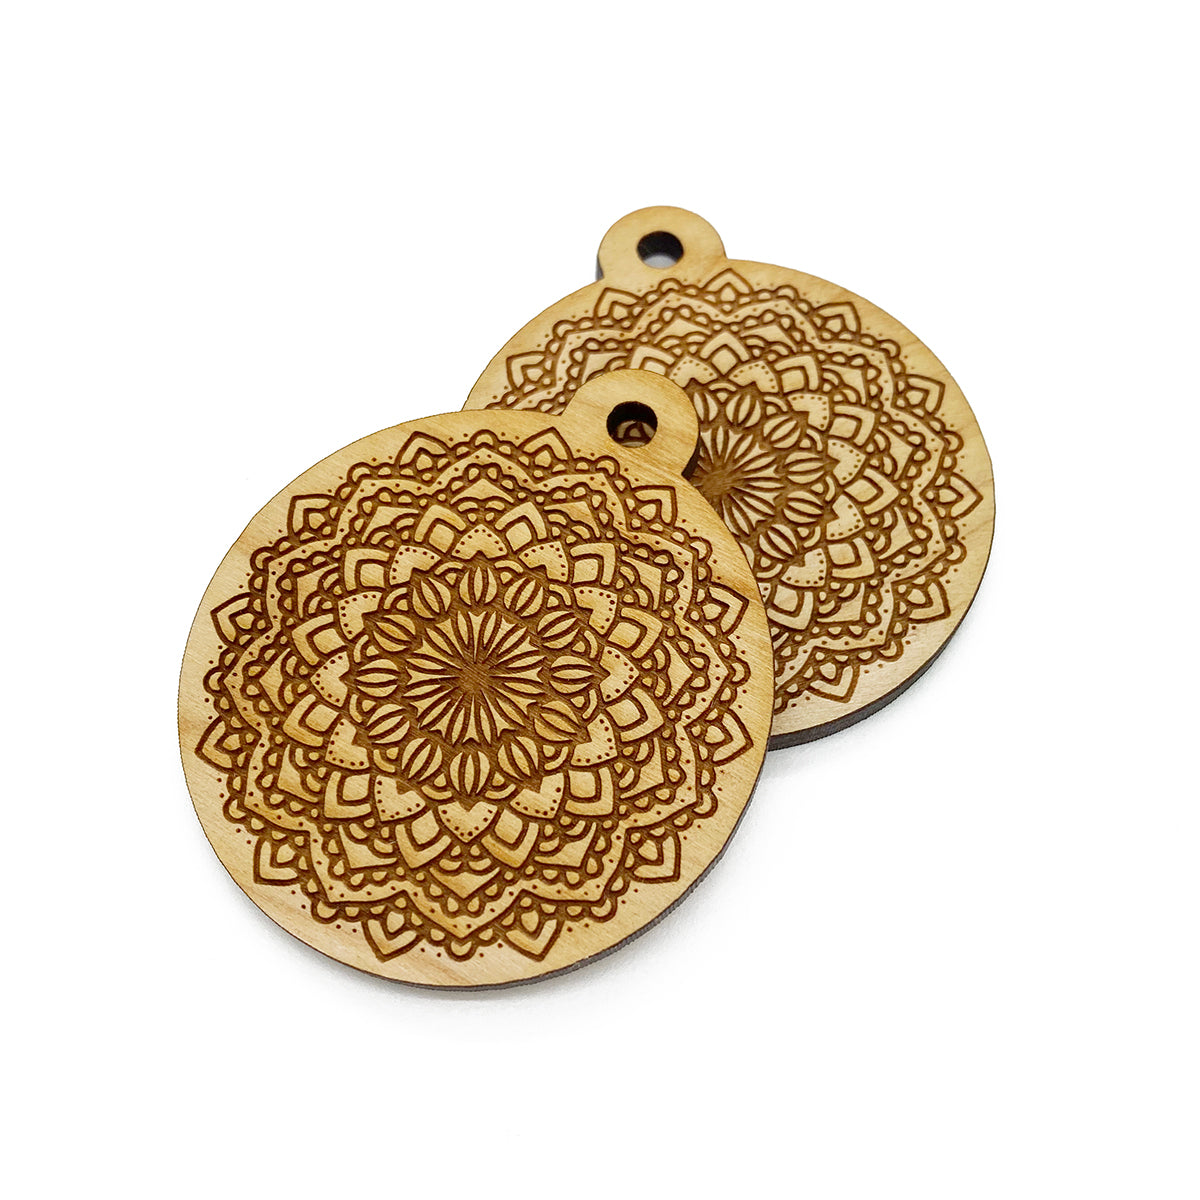 Detailed Mandala Engraved Circle Shaped Wood Keychain Charm Blanks